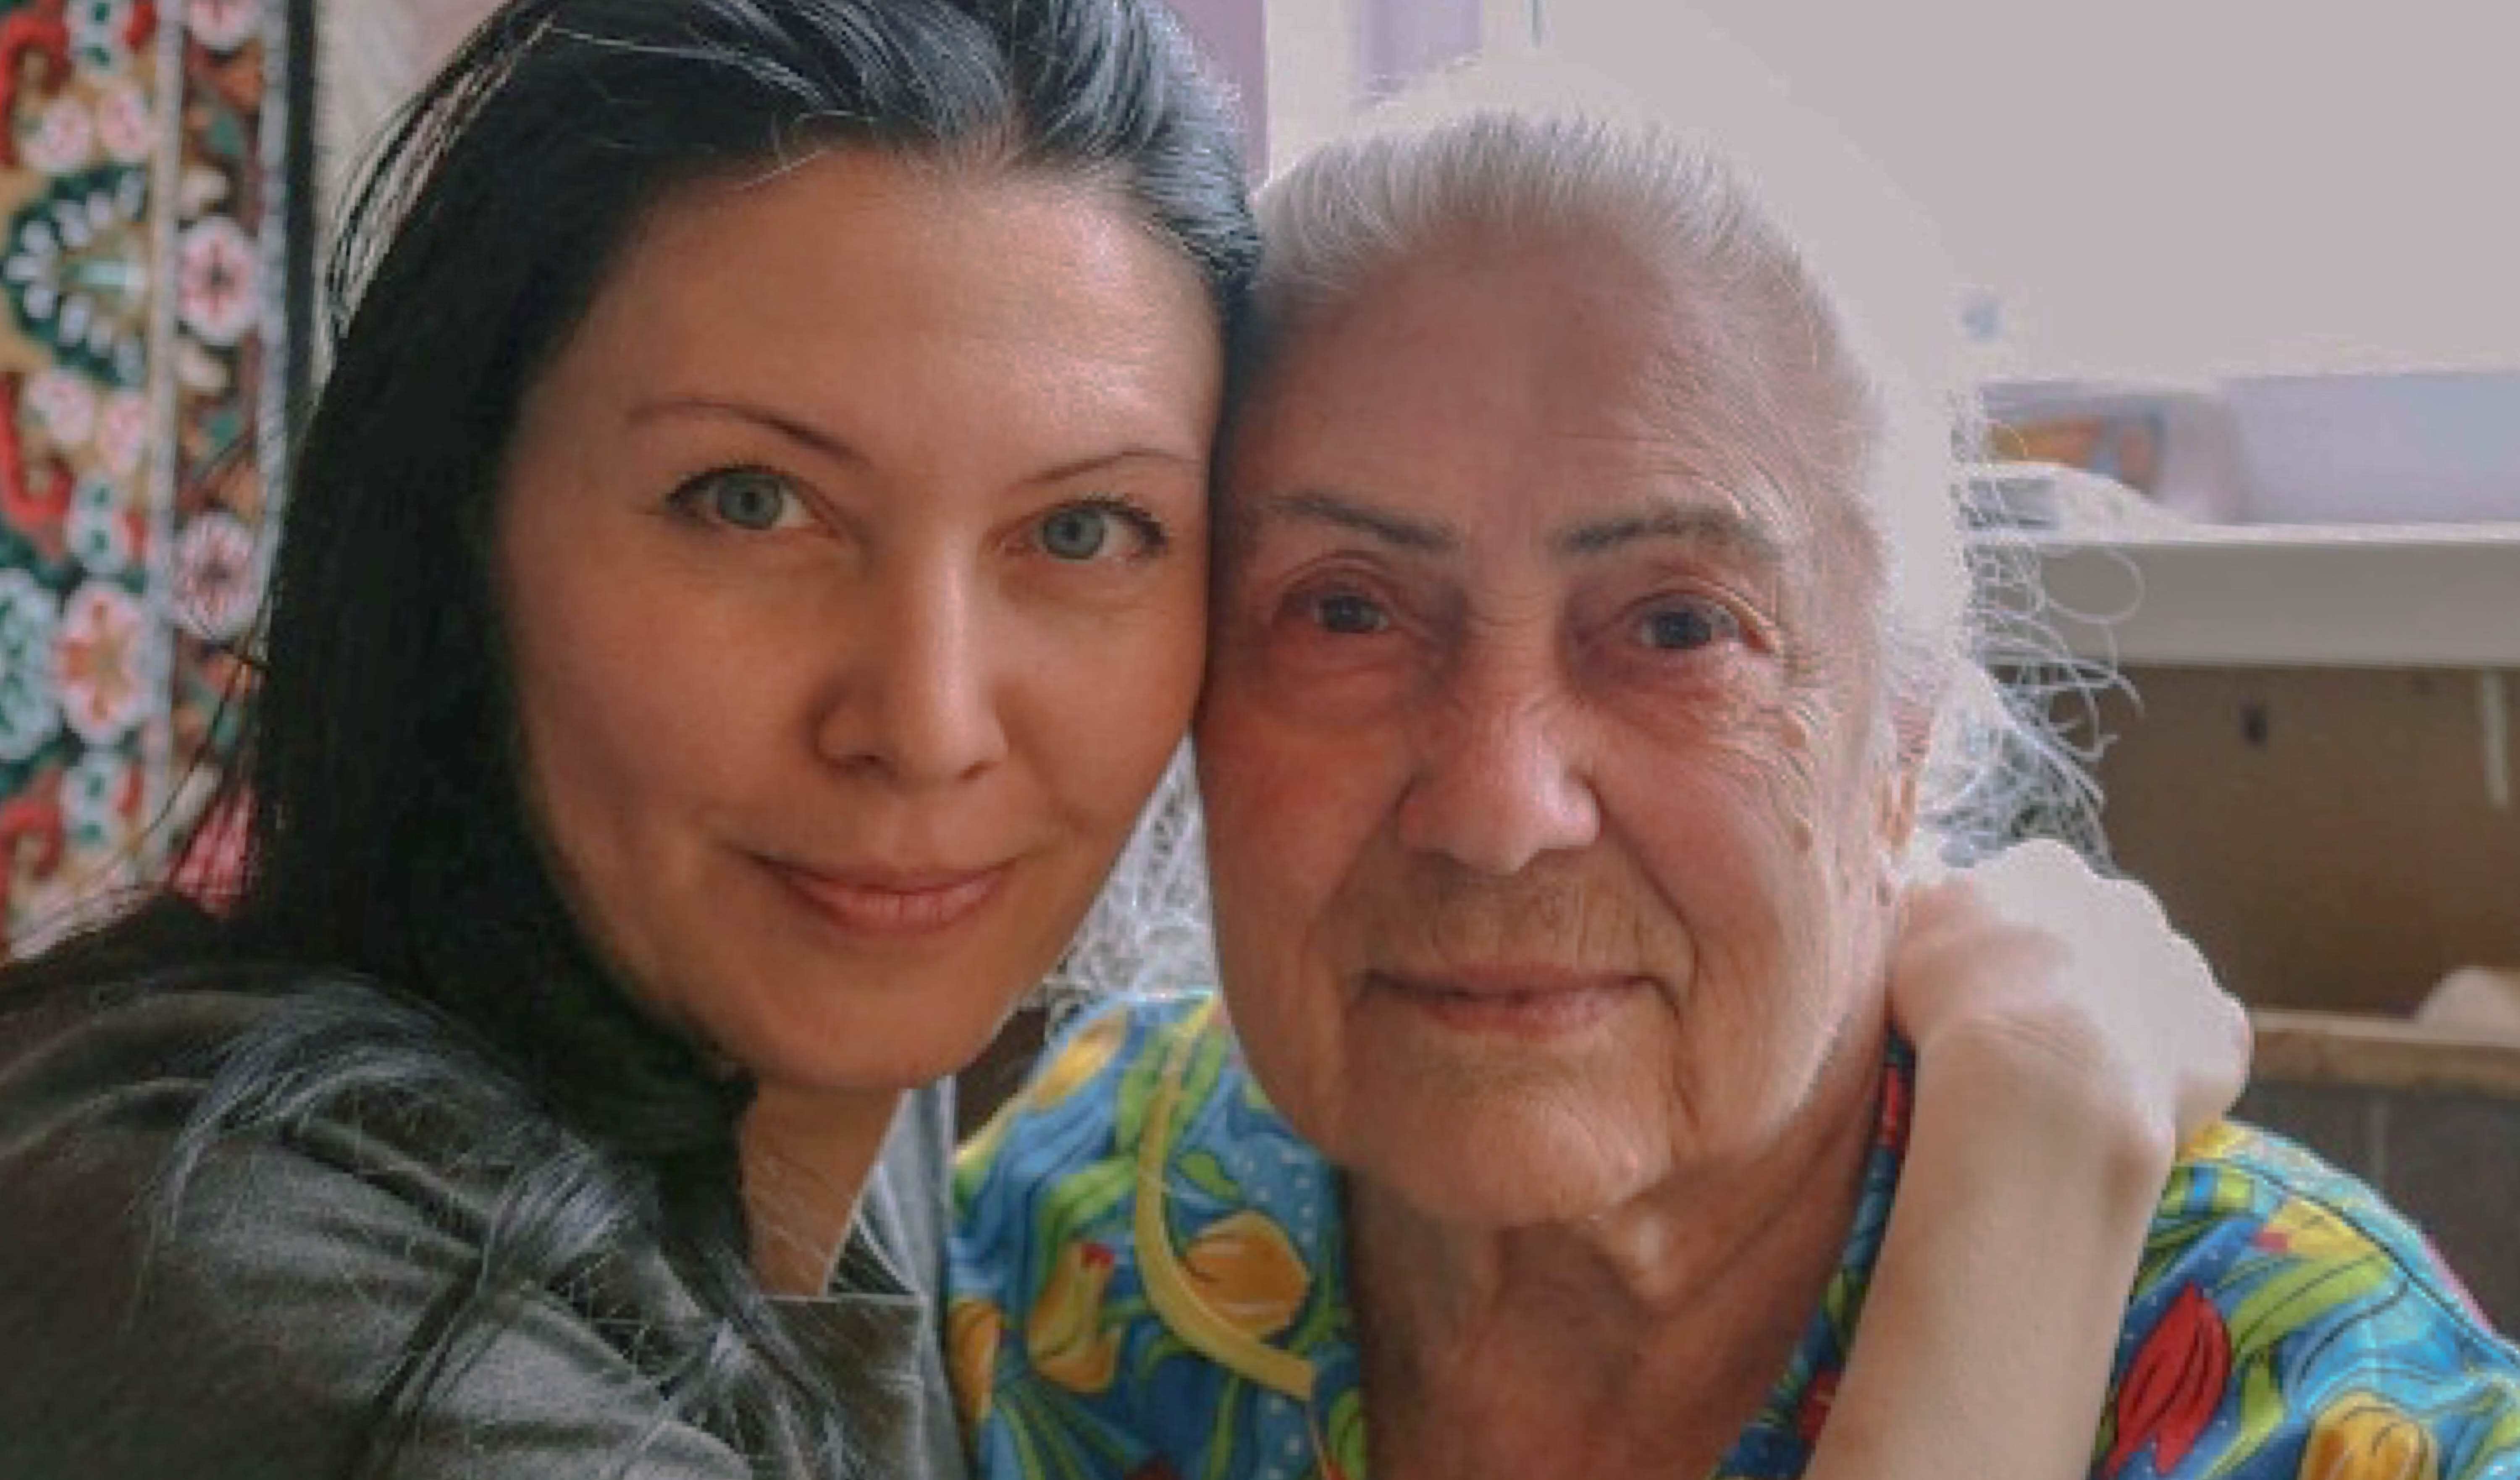  «Встречают нас обычно как внуков»: три истории волонтеров, помогающих пенсионерам и инвалидам в период пандемии